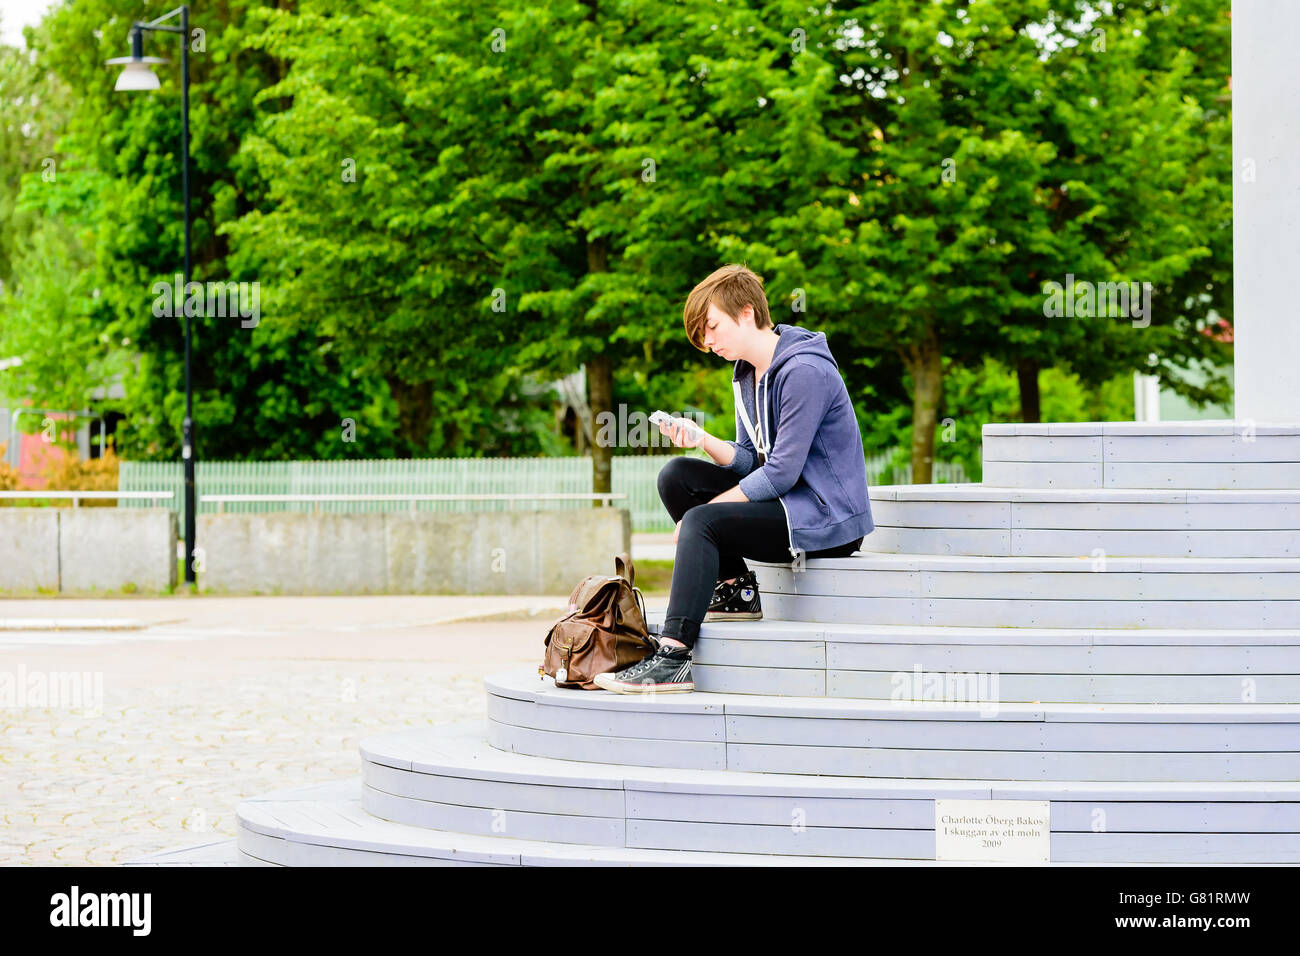 Soderkoping, Suecia - Junio 20, 2016: el joven adulto sentado en las escaleras de un monumento artístico mientras texting en el mobil Foto de stock